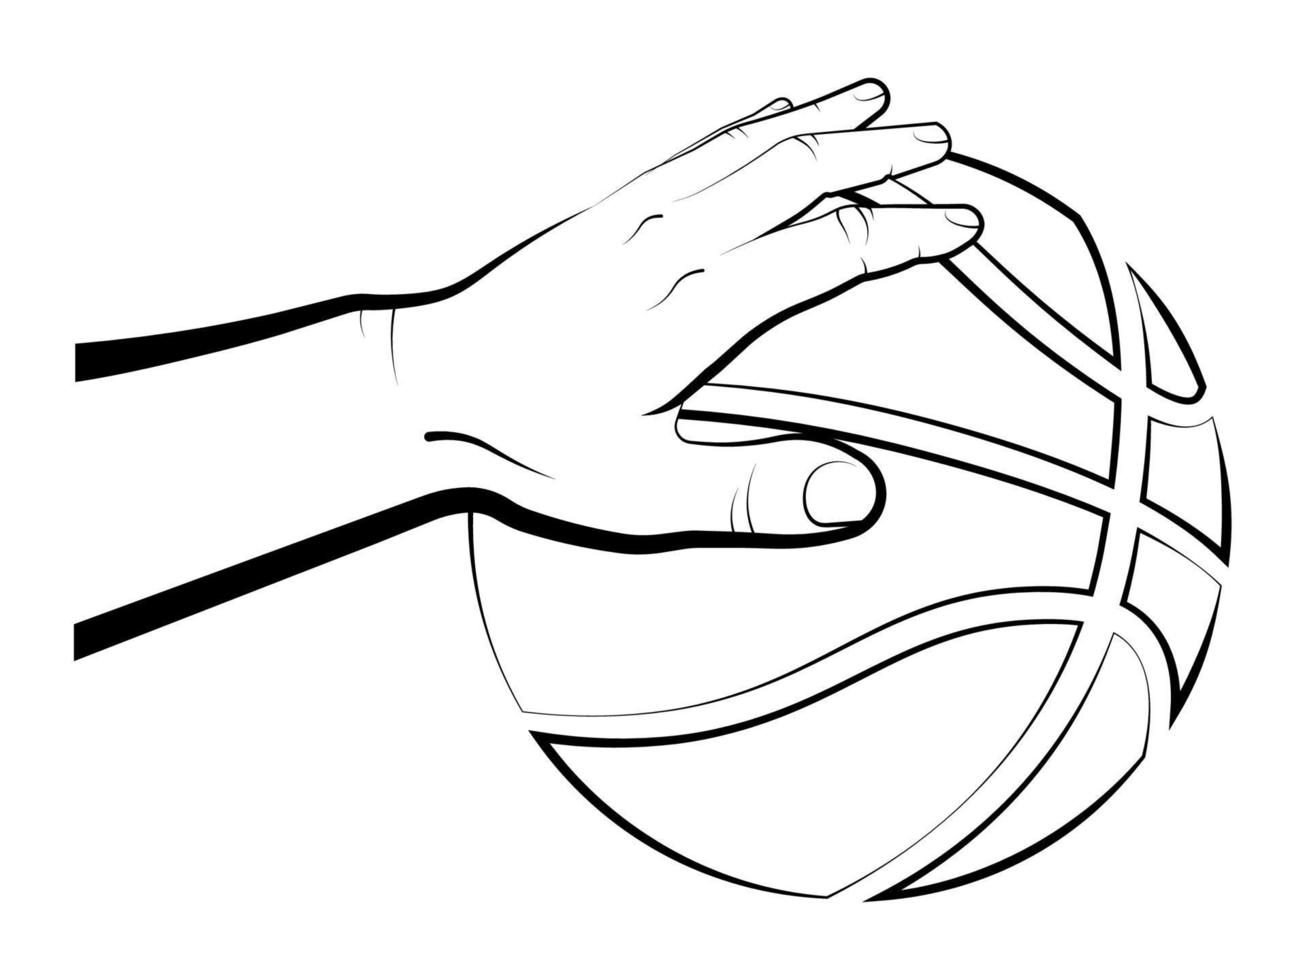 la main de l'athlète tient un ballon de basket pendant le match. sports d'équipe, mode de vie sain. vecteur isolé sur fond blanc